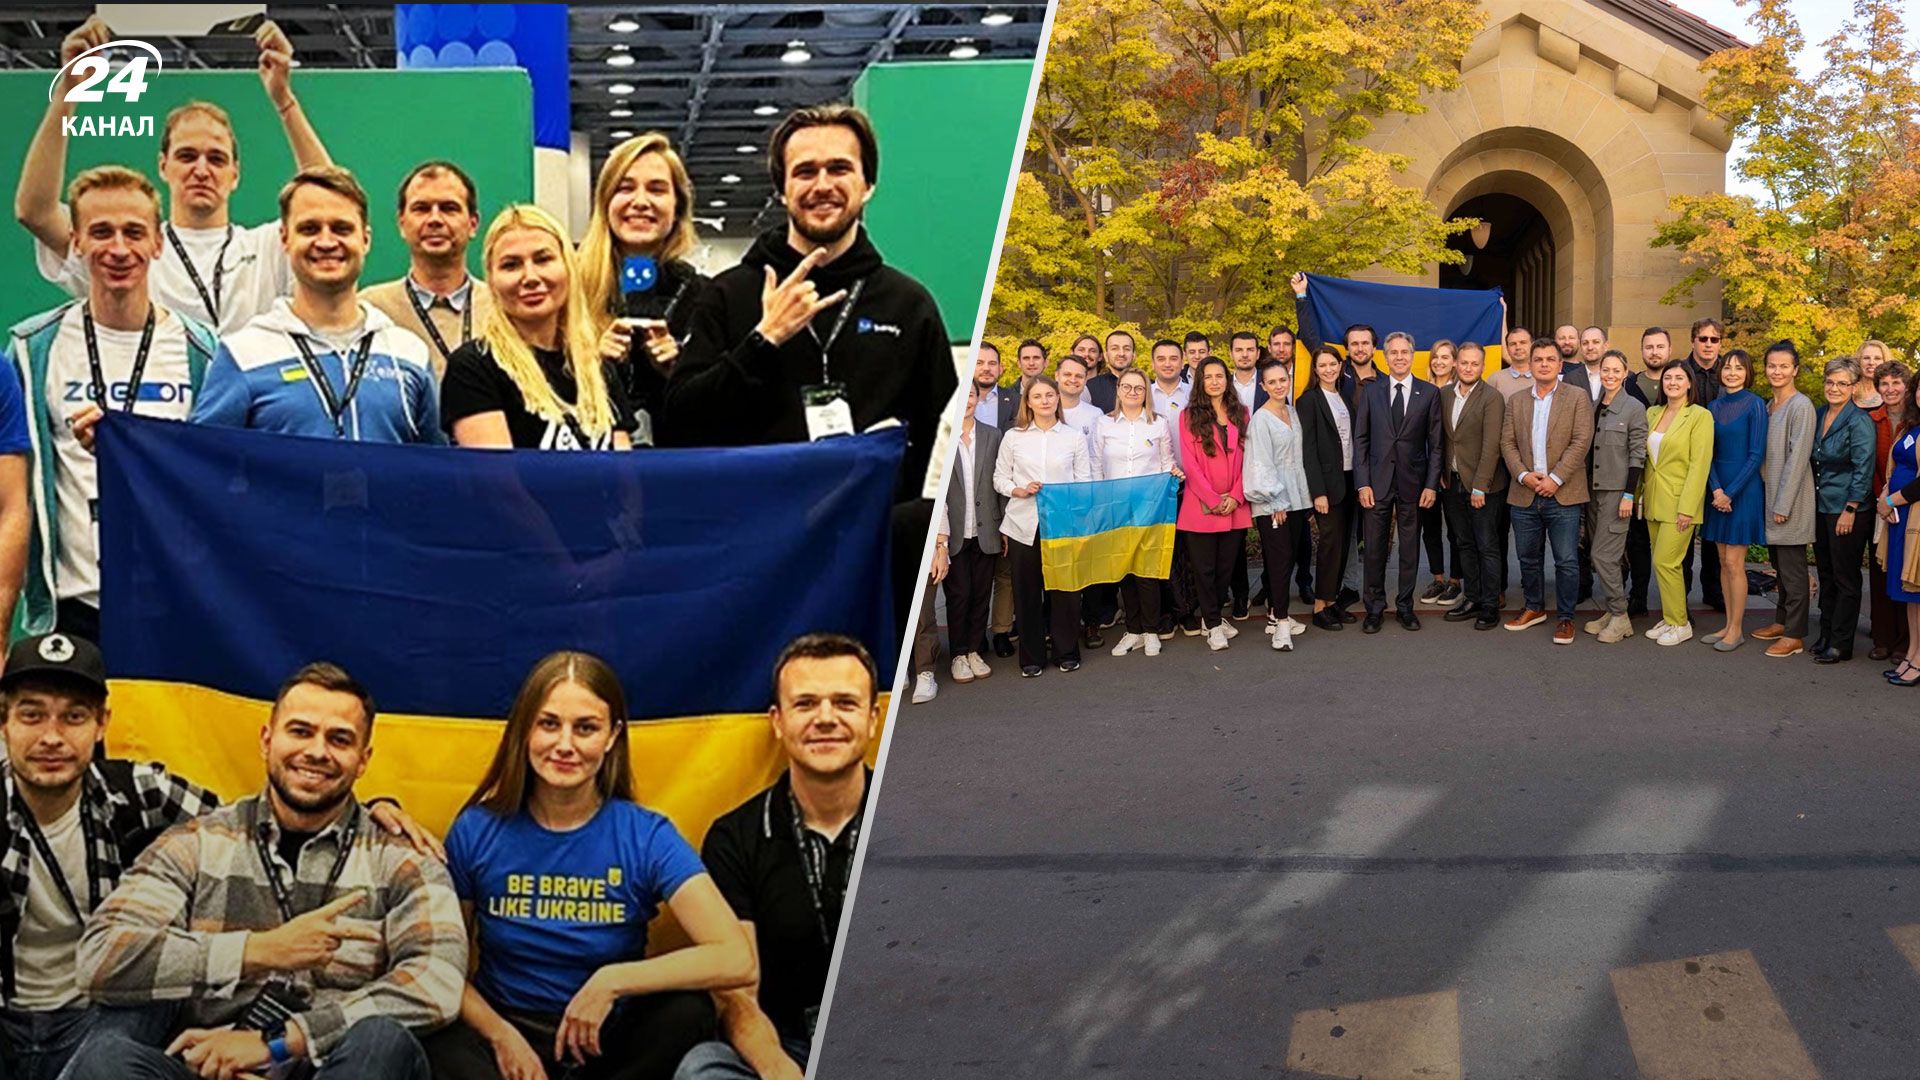 Українська делегація стартапів вперше була представлена на TechCrunch Disrupt окремим павільйоном